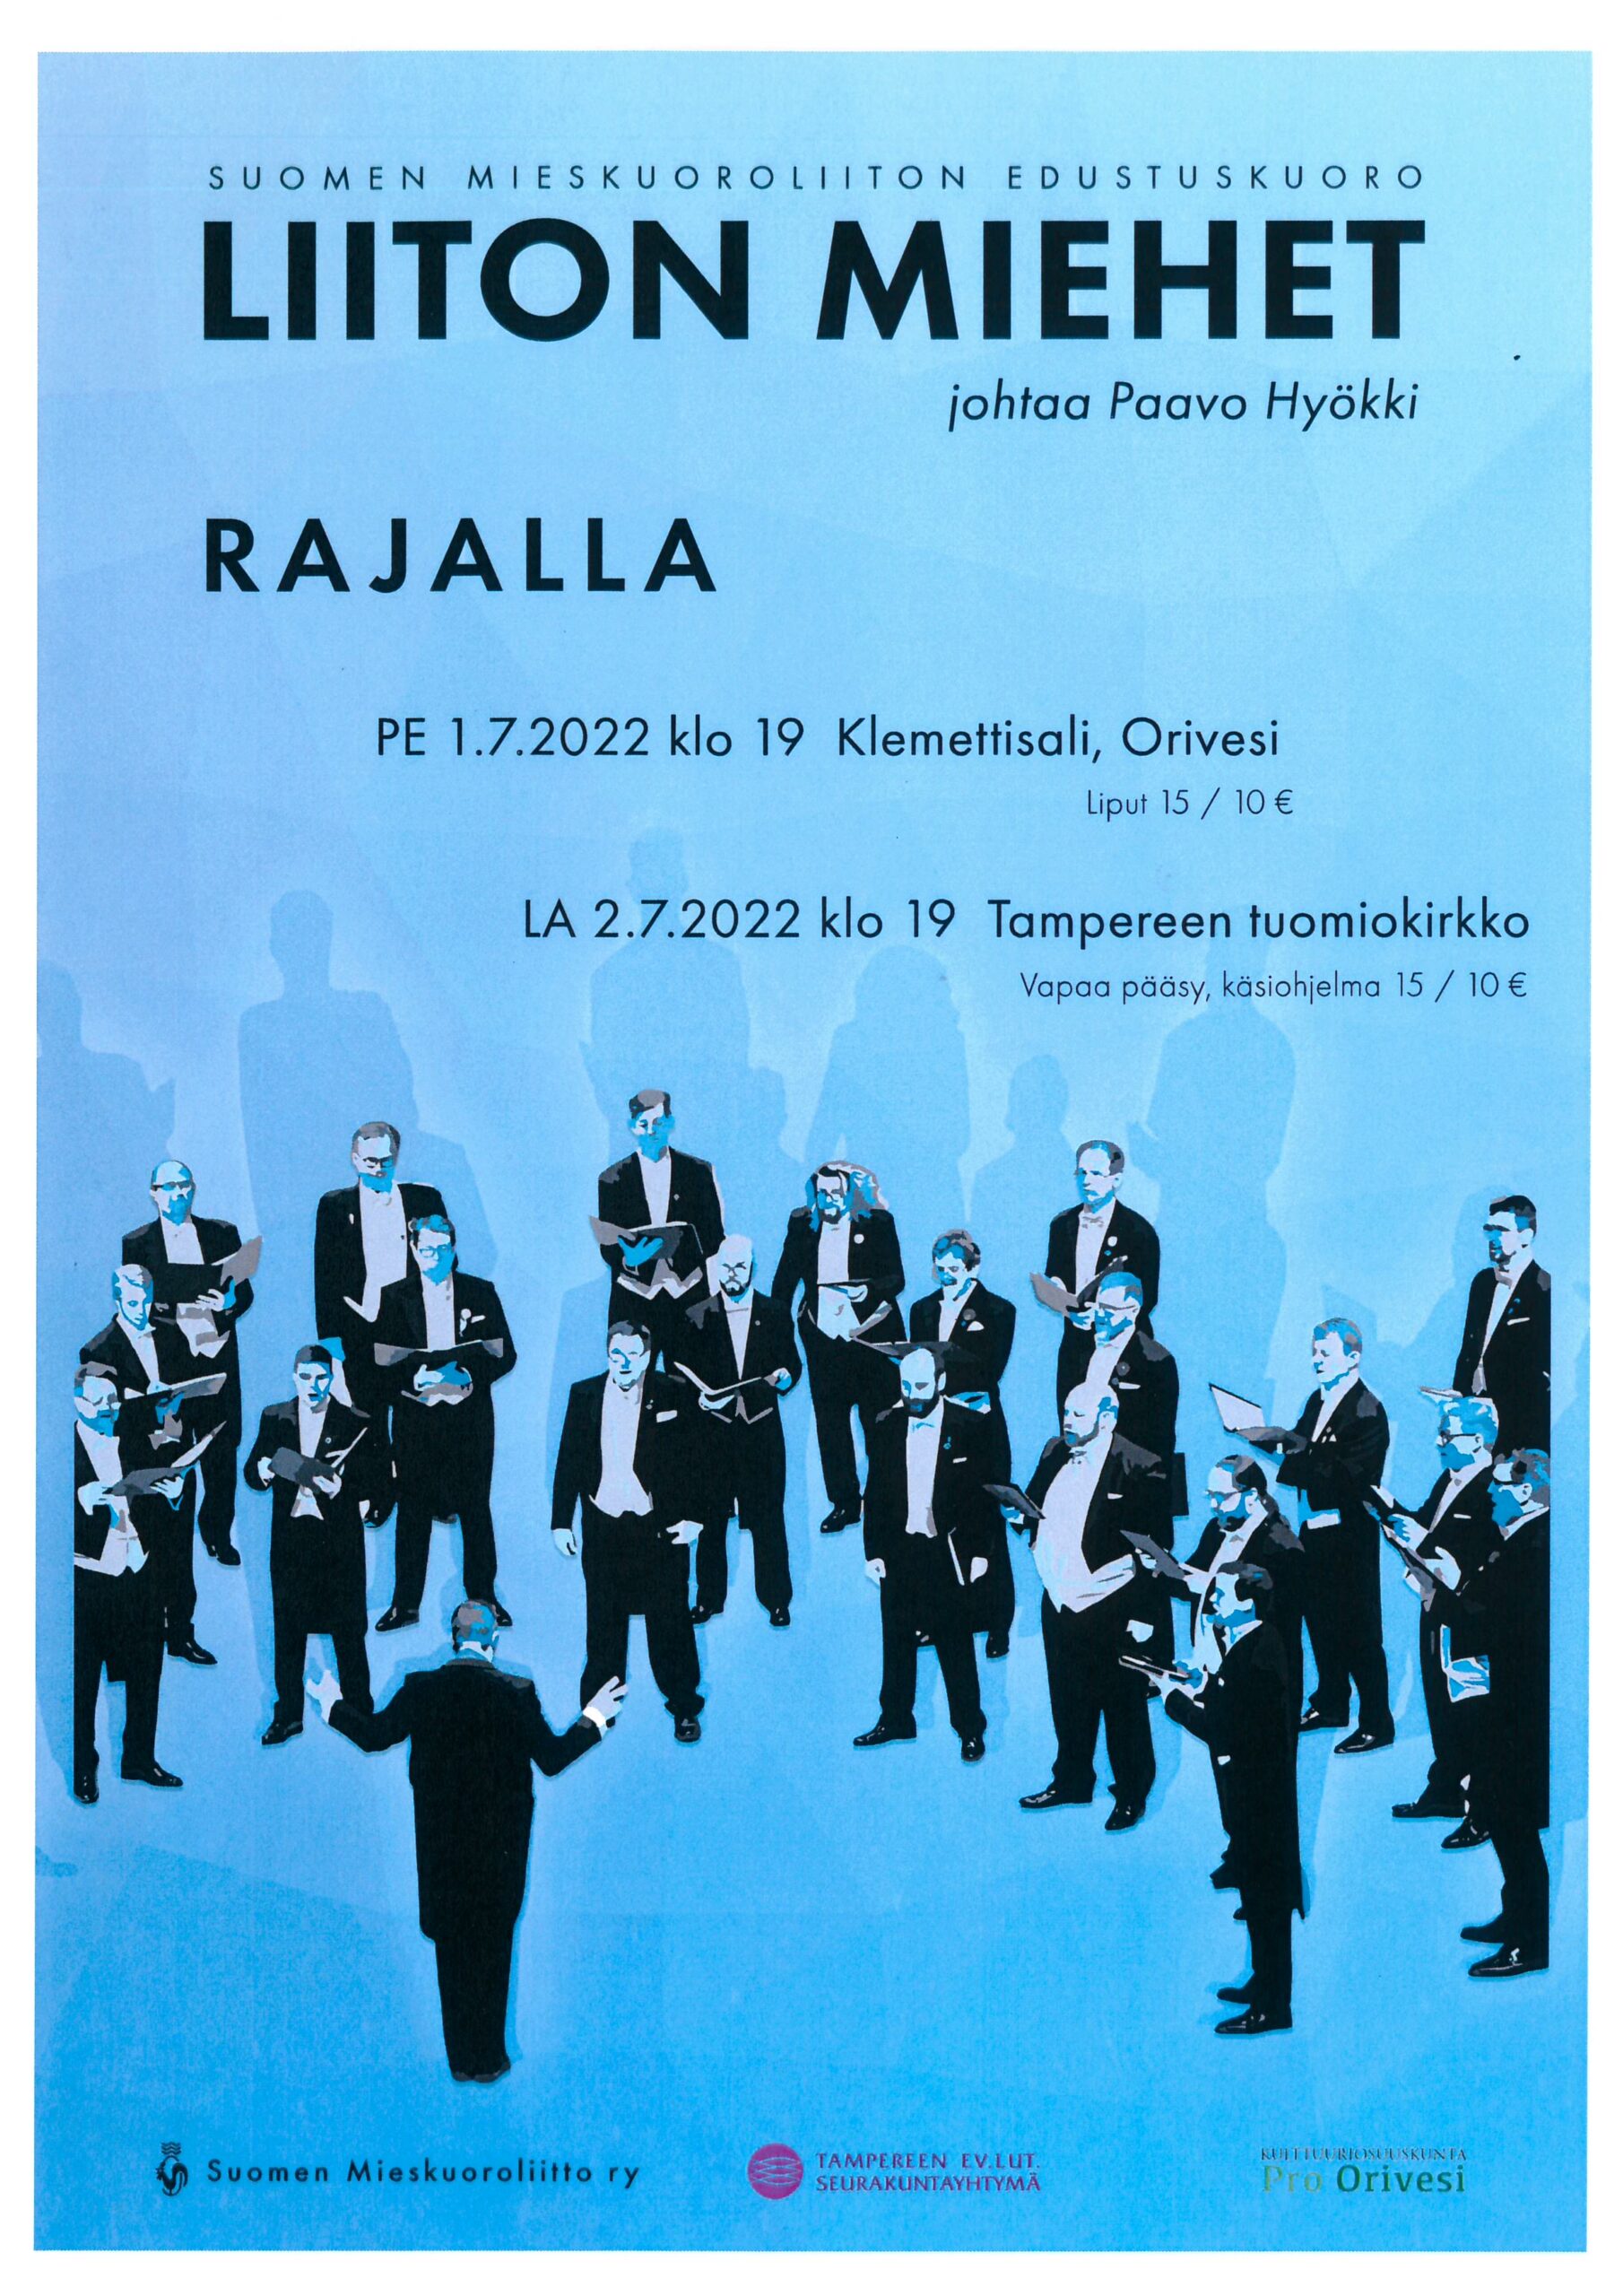 Suomen mieskuoroliiton edustuskuoro Liiton Miehet johtaa Paavo Hyökki konsertti Oriveden Kampus